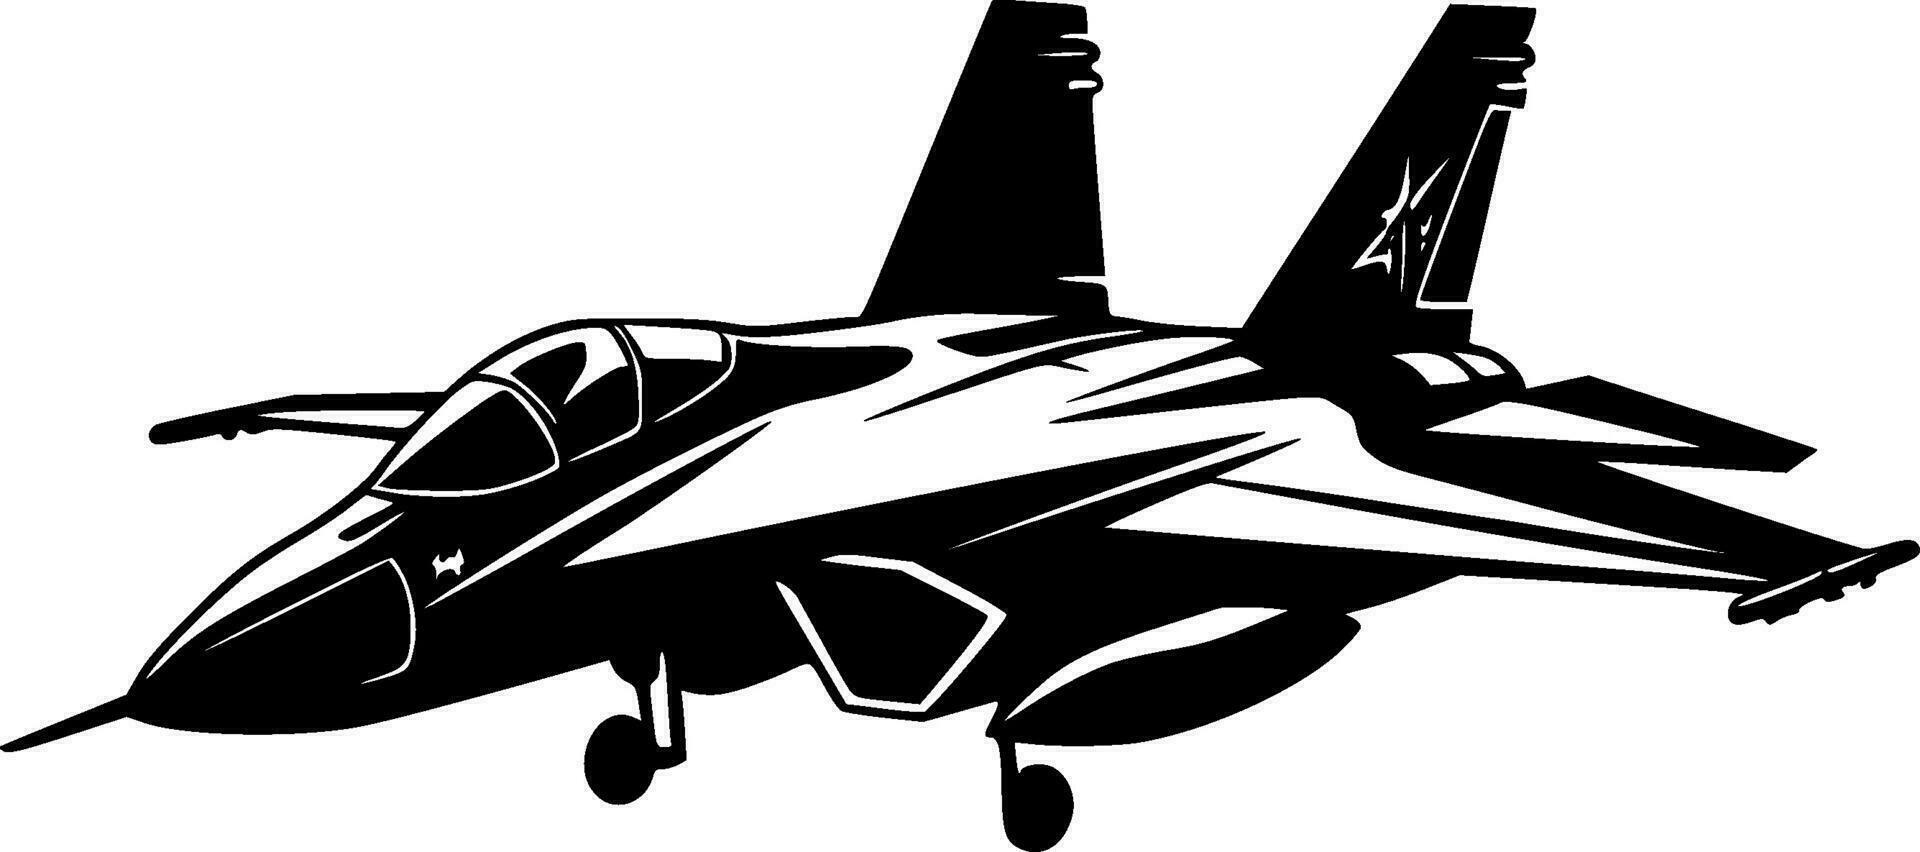 kämpe jet - hög kvalitet vektor logotyp - vektor illustration idealisk för t-shirt grafisk